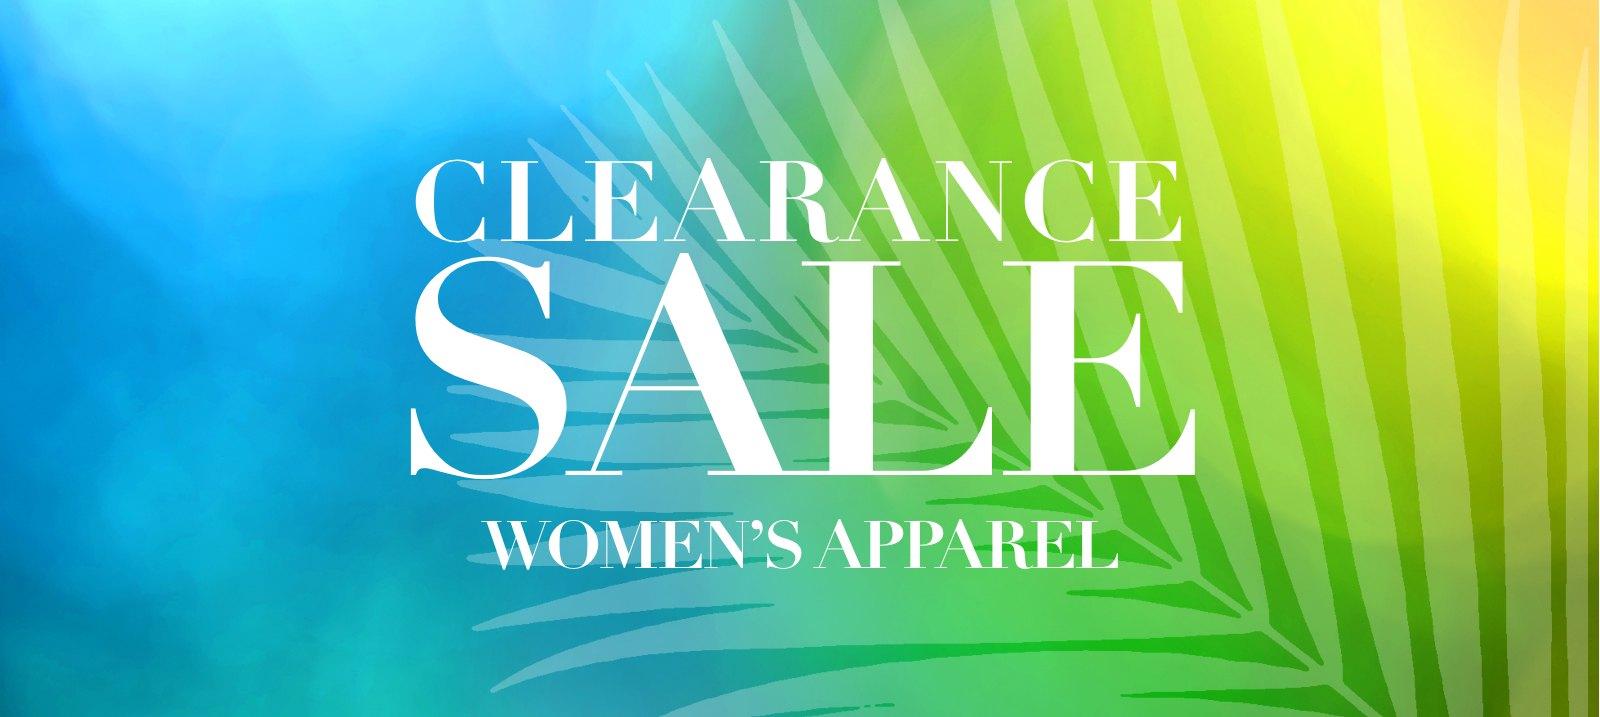 Clearance sale：Women's